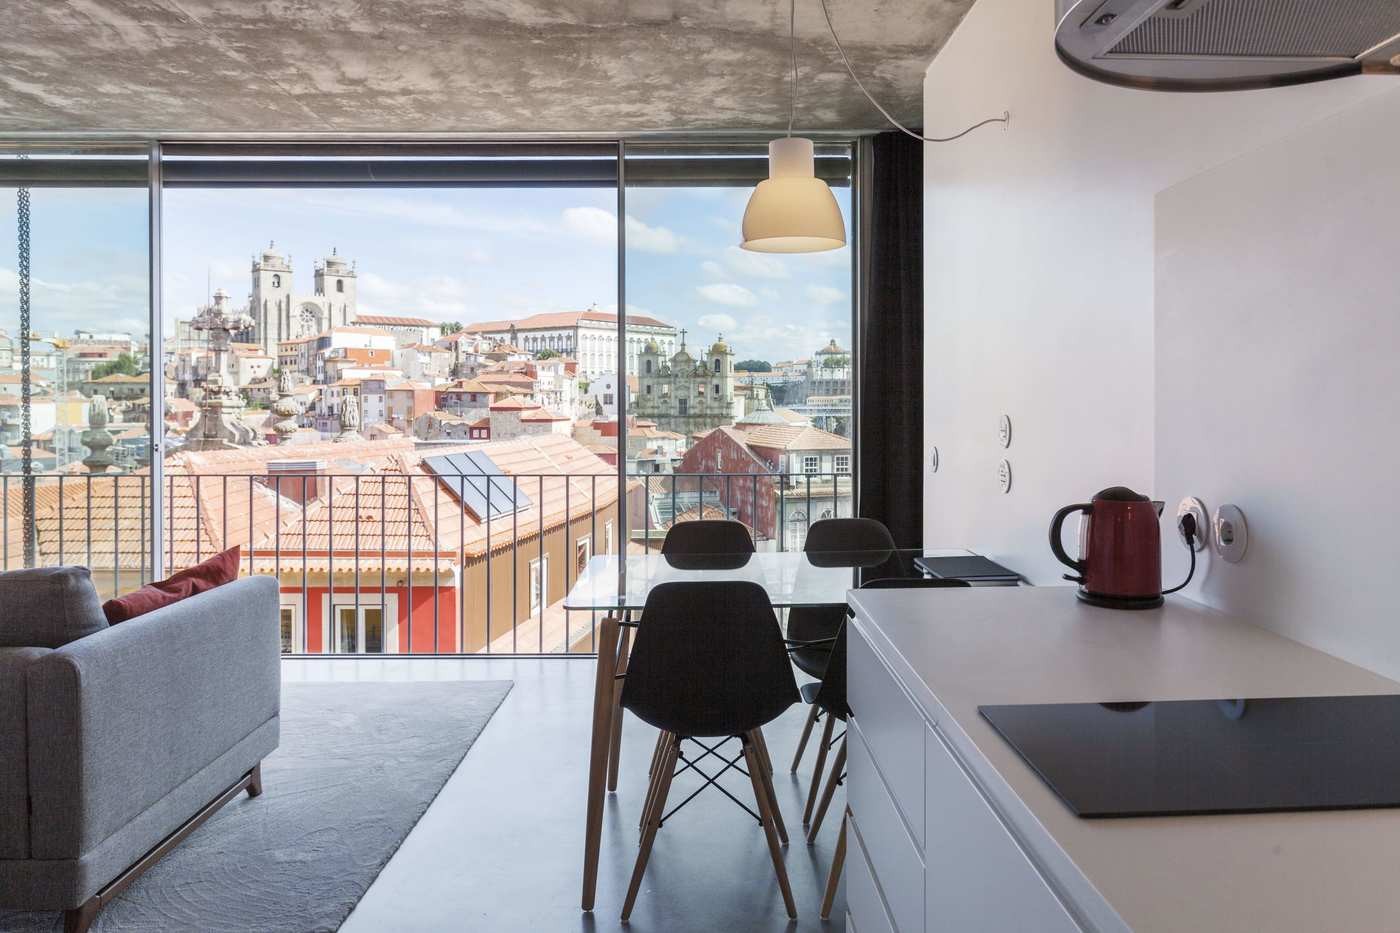 Décor do dia: sala integrada com concreto aparente e janelões  (Foto: Divulgação)